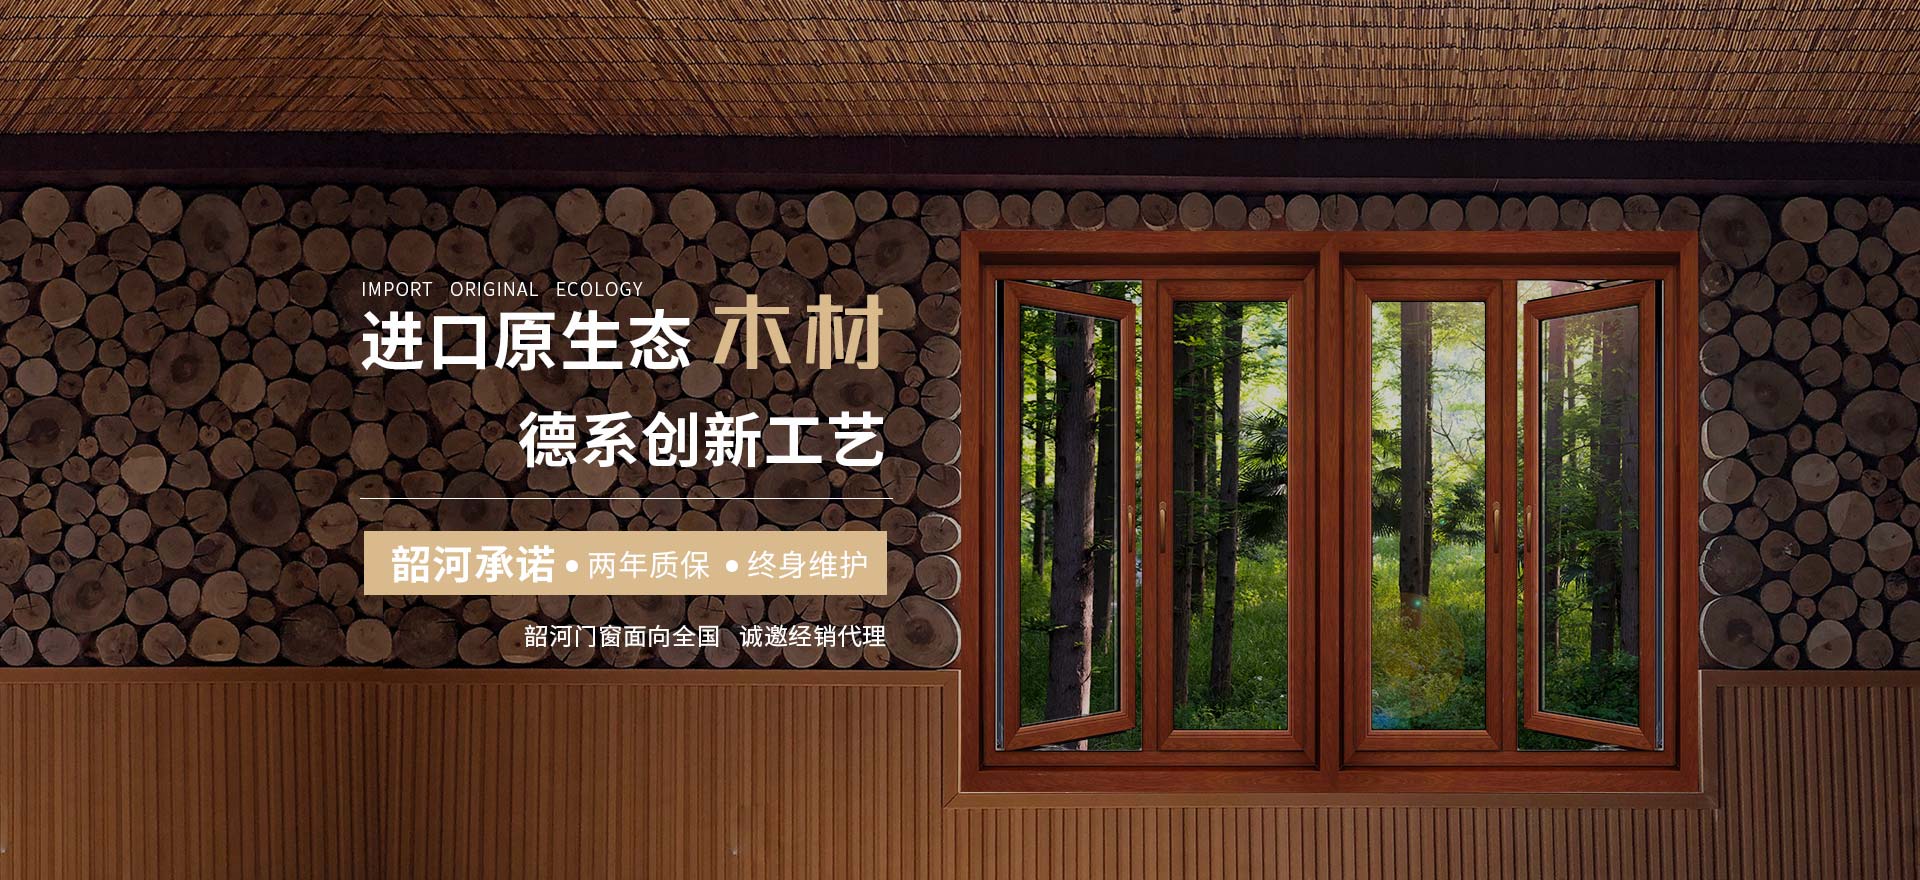 韶河门窗进口原生态木材与配件、德系创新工艺